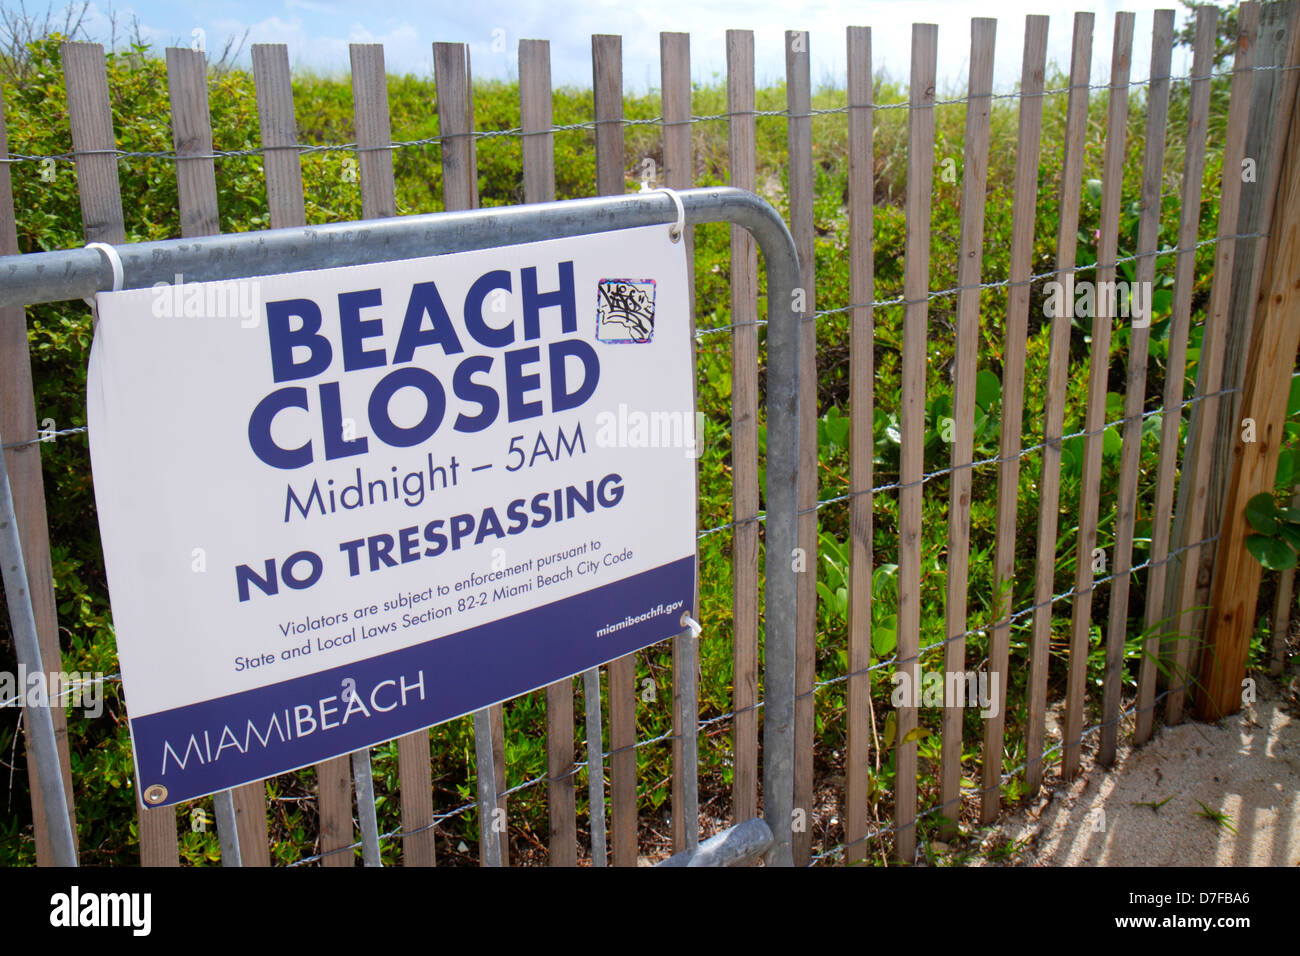 Miami Beach Florida, duna protetta, recinzione, segno, spiaggia chiusa mezzanotte, senza tregua, coprifuoco, FL120720008 Foto Stock